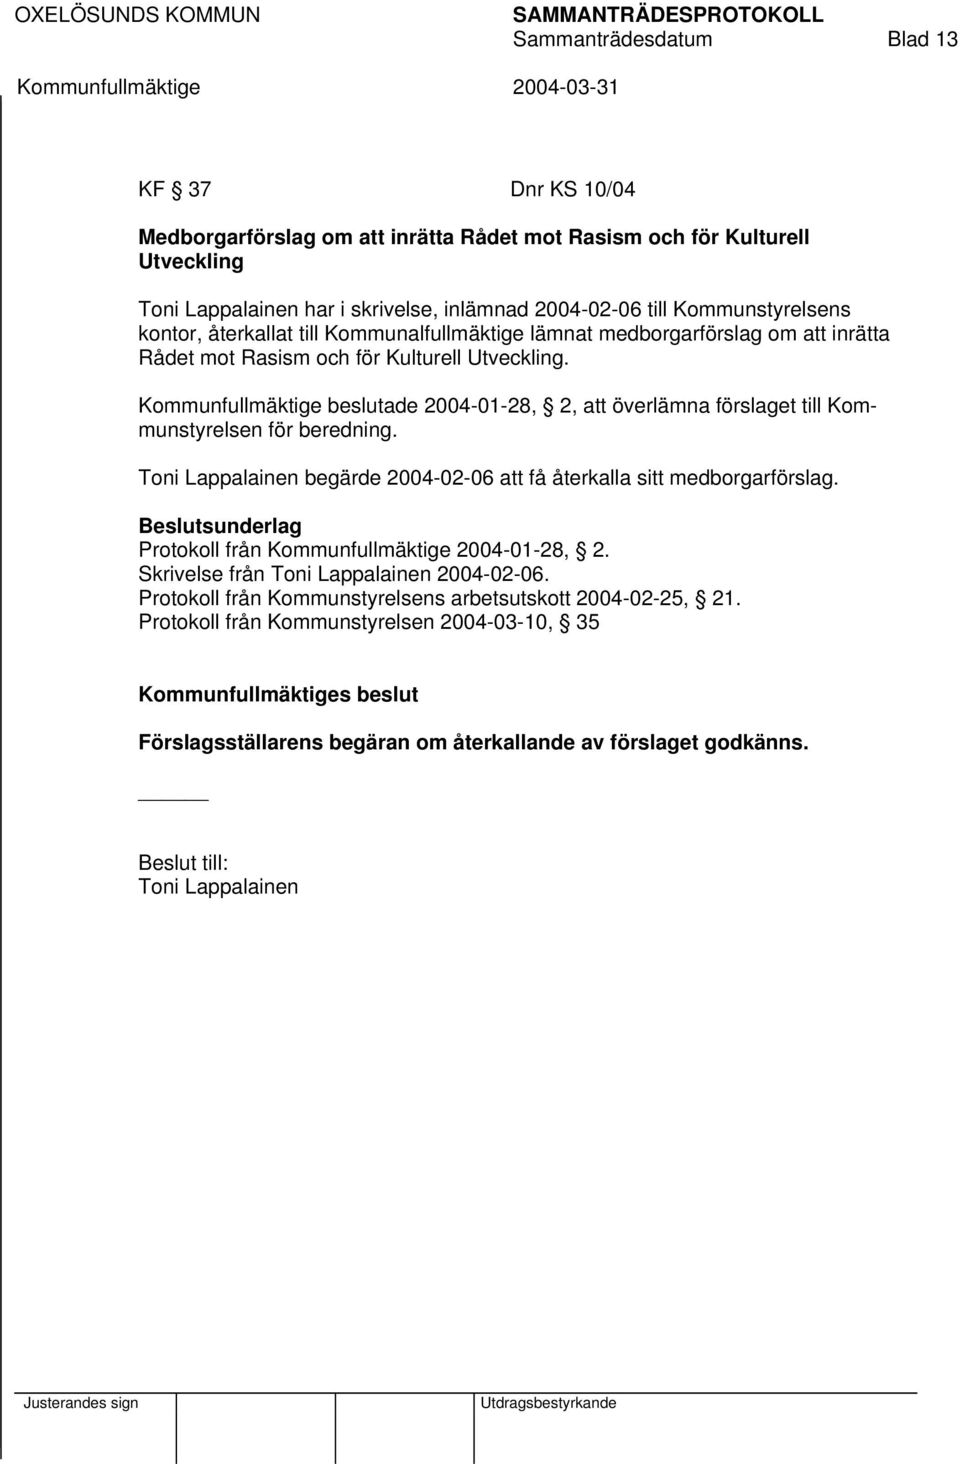 Kommunfullmäktige beslutade 2004-01-28, 2, att överlämna förslaget till Kommunstyrelsen för beredning. Toni Lappalainen begärde 2004-02-06 att få återkalla sitt medborgarförslag.